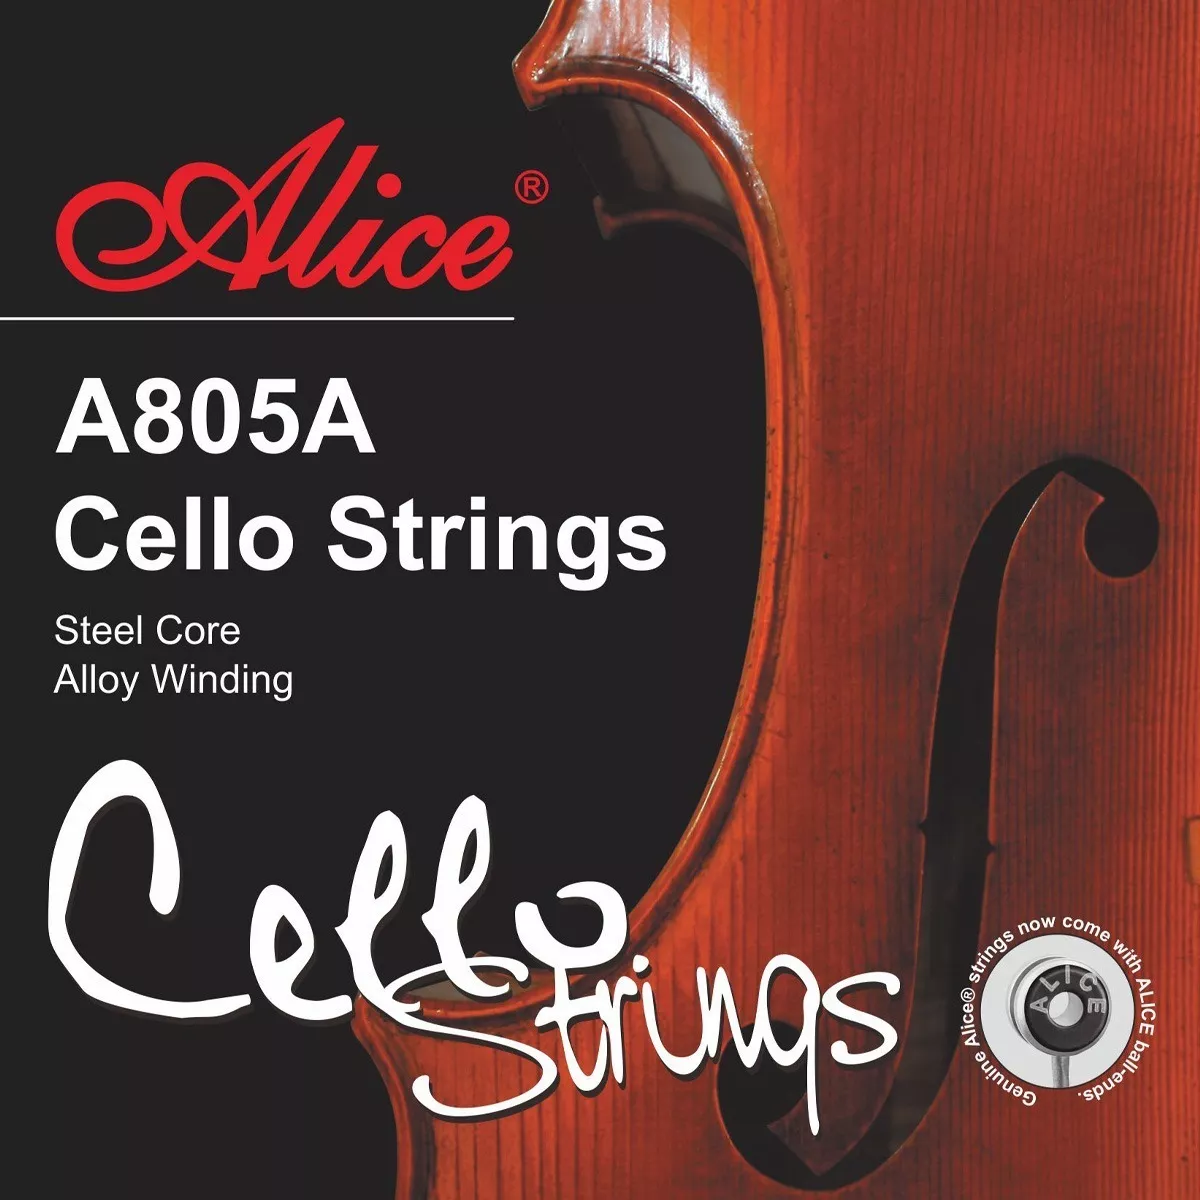 Primera imagen para búsqueda de cello